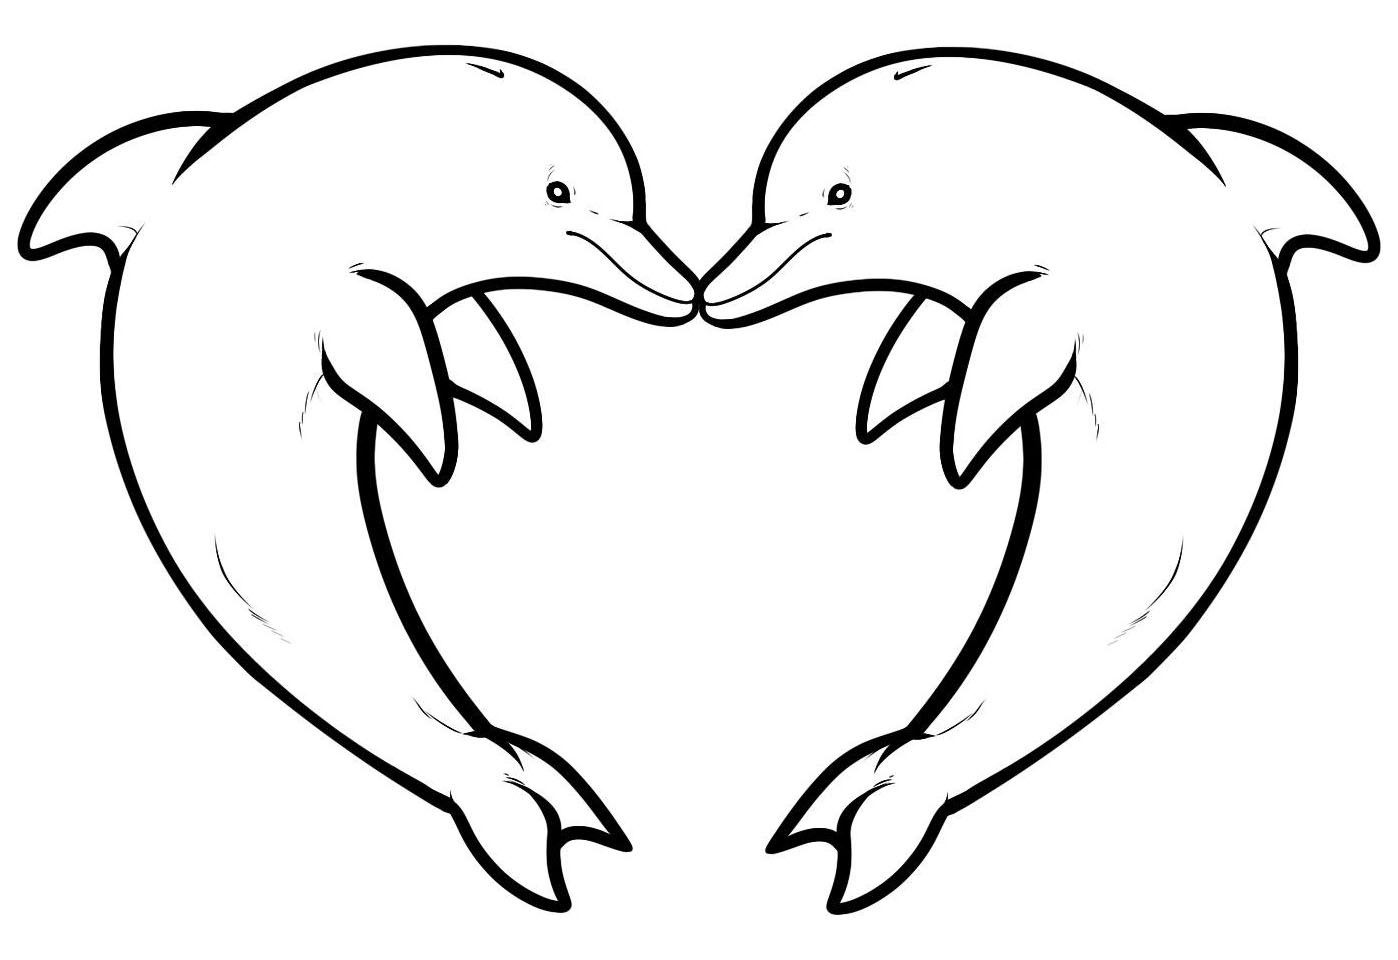 2 Golfinhos formando um coração